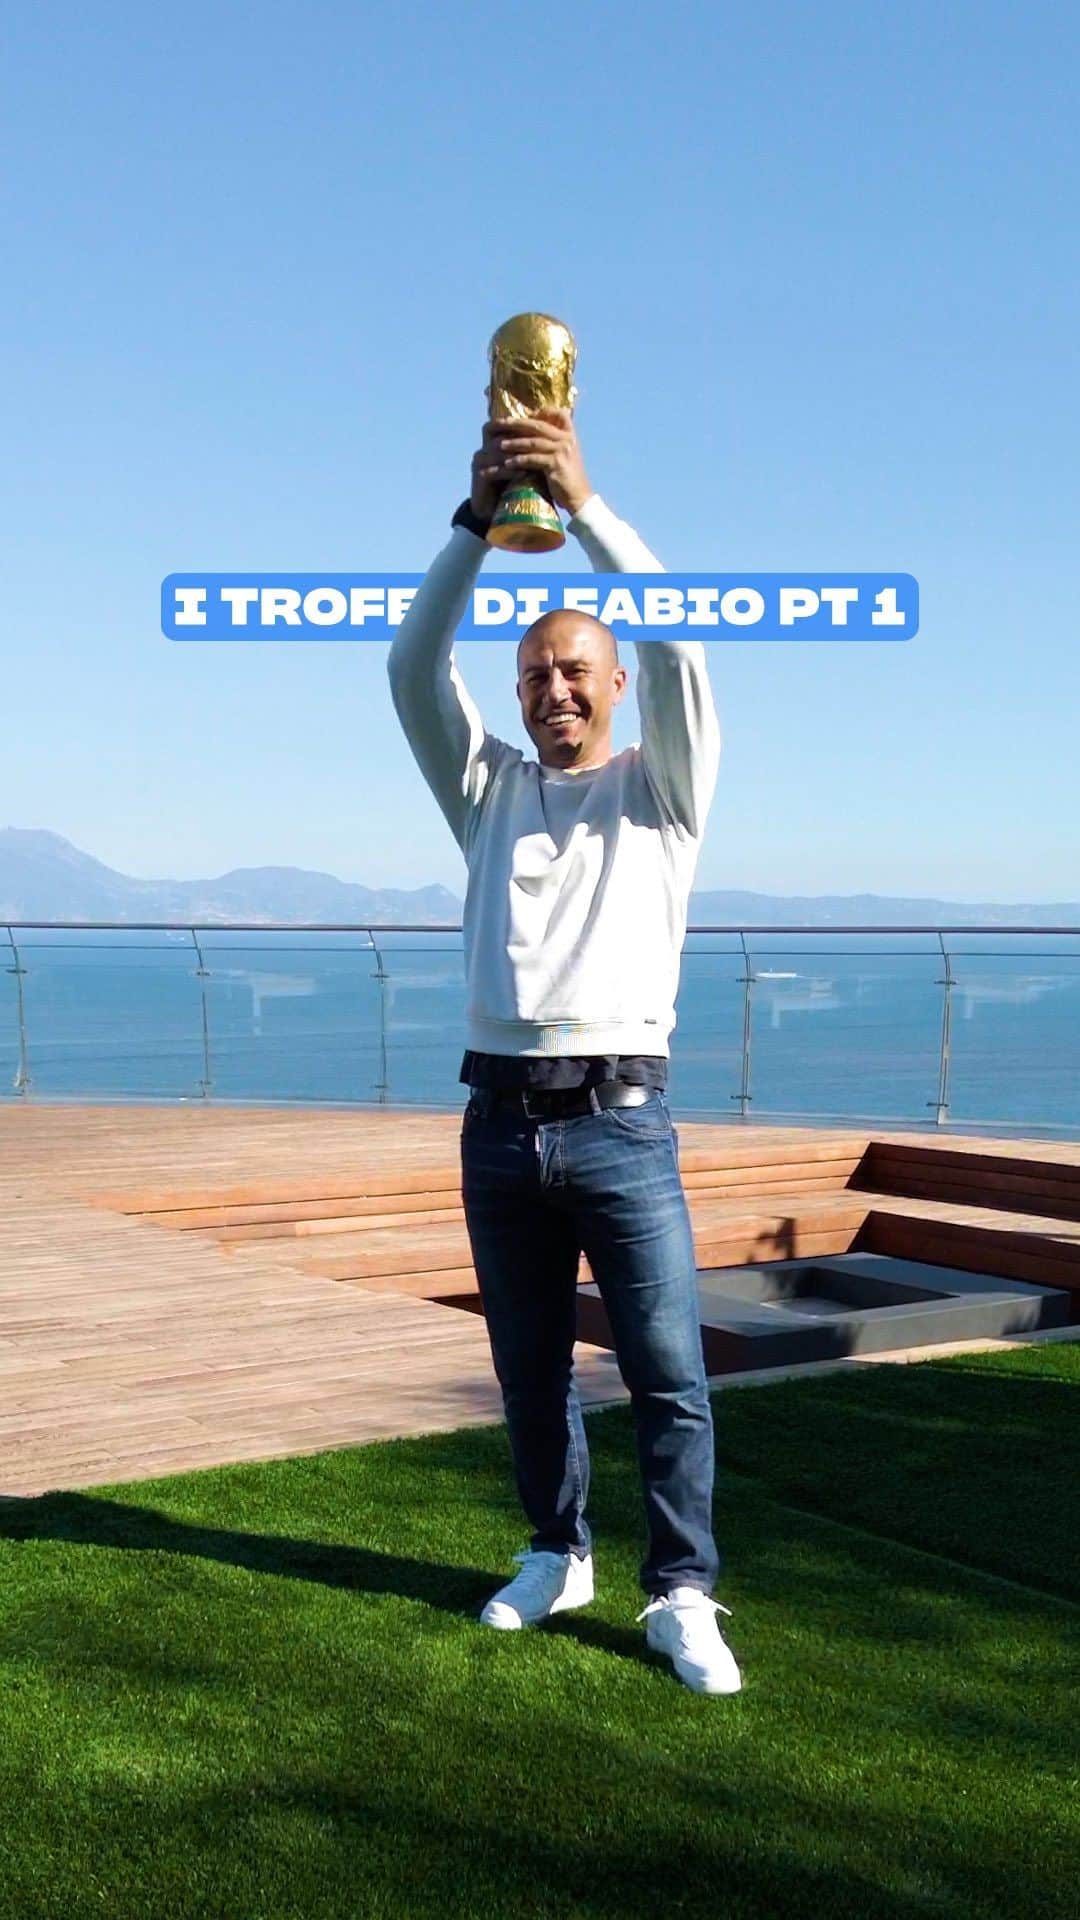 ファビオ・カンナヴァーロのインスタグラム：「Dietro un grande 𝗙𝗟𝗘𝗫 c’è anche un 𝗥𝗔𝗖𝗖𝗢𝗡𝗧𝗢. Partiamo soft con la 𝘾𝙊𝙋𝙋𝘼 𝘿𝙀𝙇 𝙈𝙊𝙉𝘿𝙊 🇮🇹🏆  #ACasaDiFabio #FabioCannavaro #Capitano #Italia #Nazionale #Cannavaro #2006 #WorldCup #Fiusgamer #CoppaDelMondo #Coppa #Trophy #Flex #PrimeVideo」